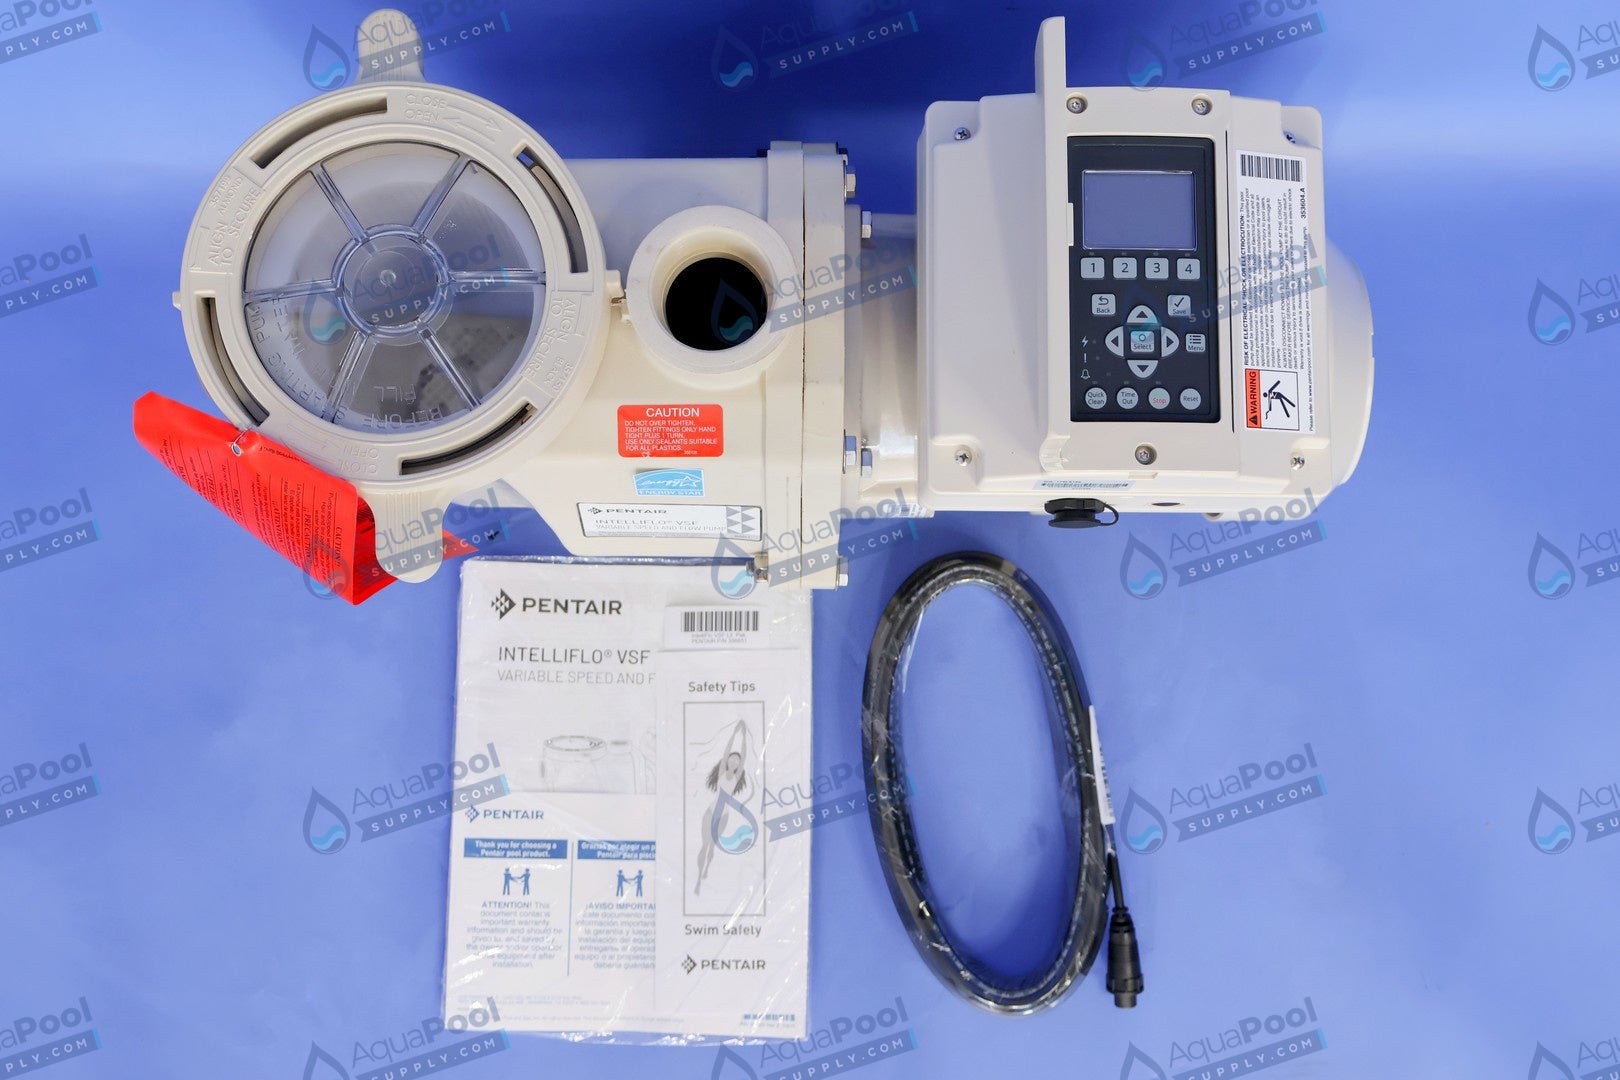 Pentair IntelliFlo® Variable Speed Pump EC-011028 (011056) - Variable Speed Pumps - img-6